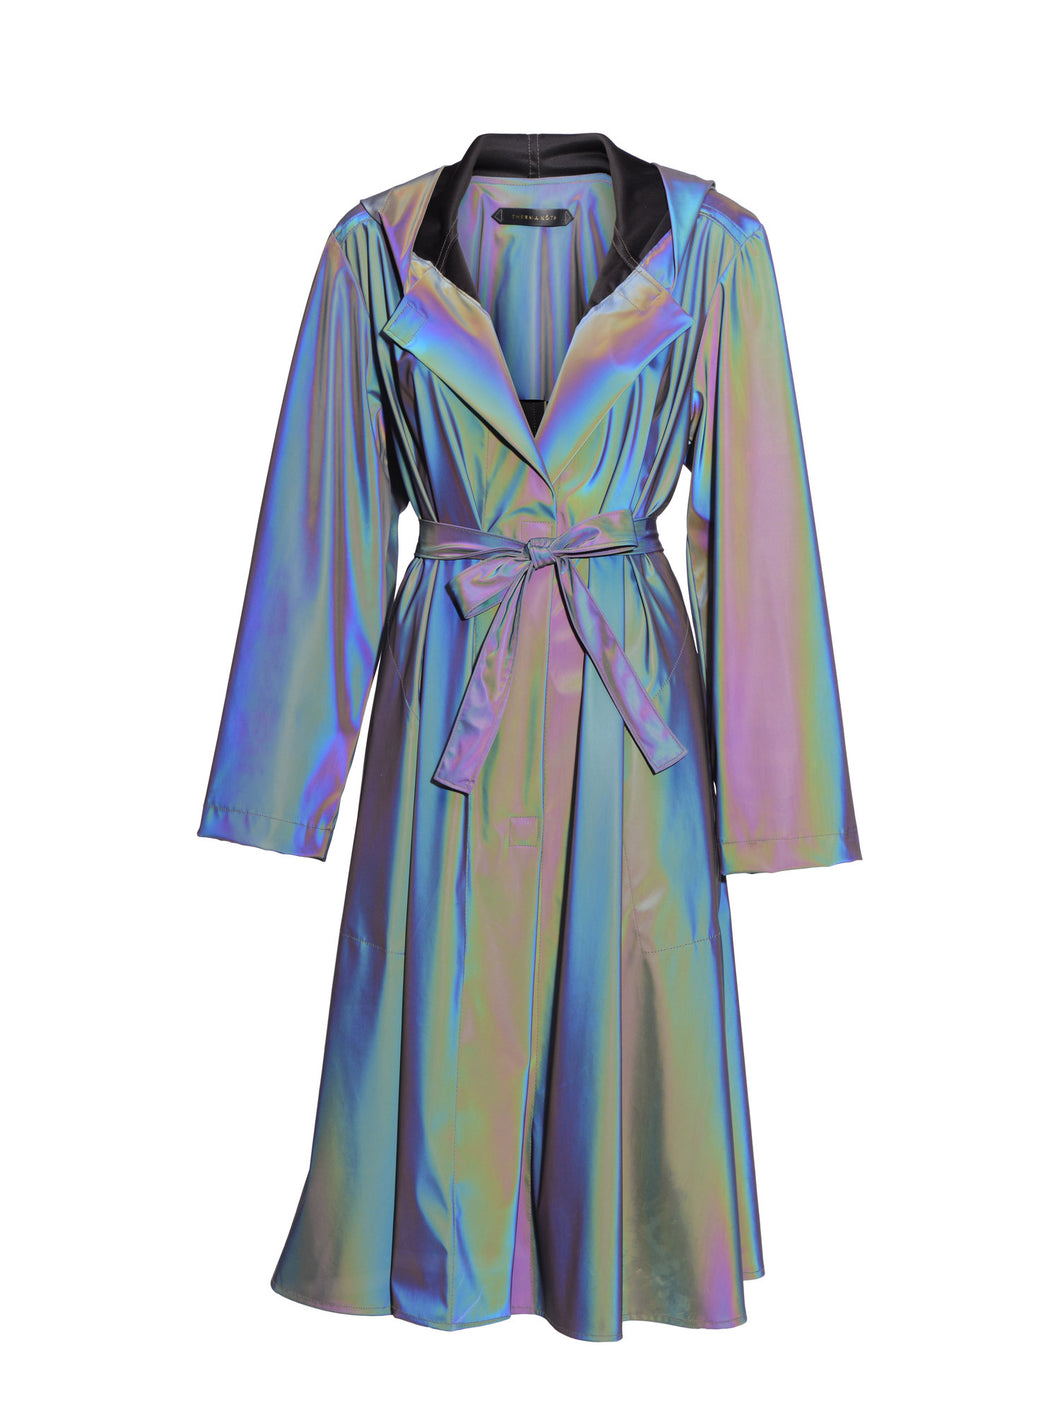 TK1-1838 Aurora Hooded Raincoat